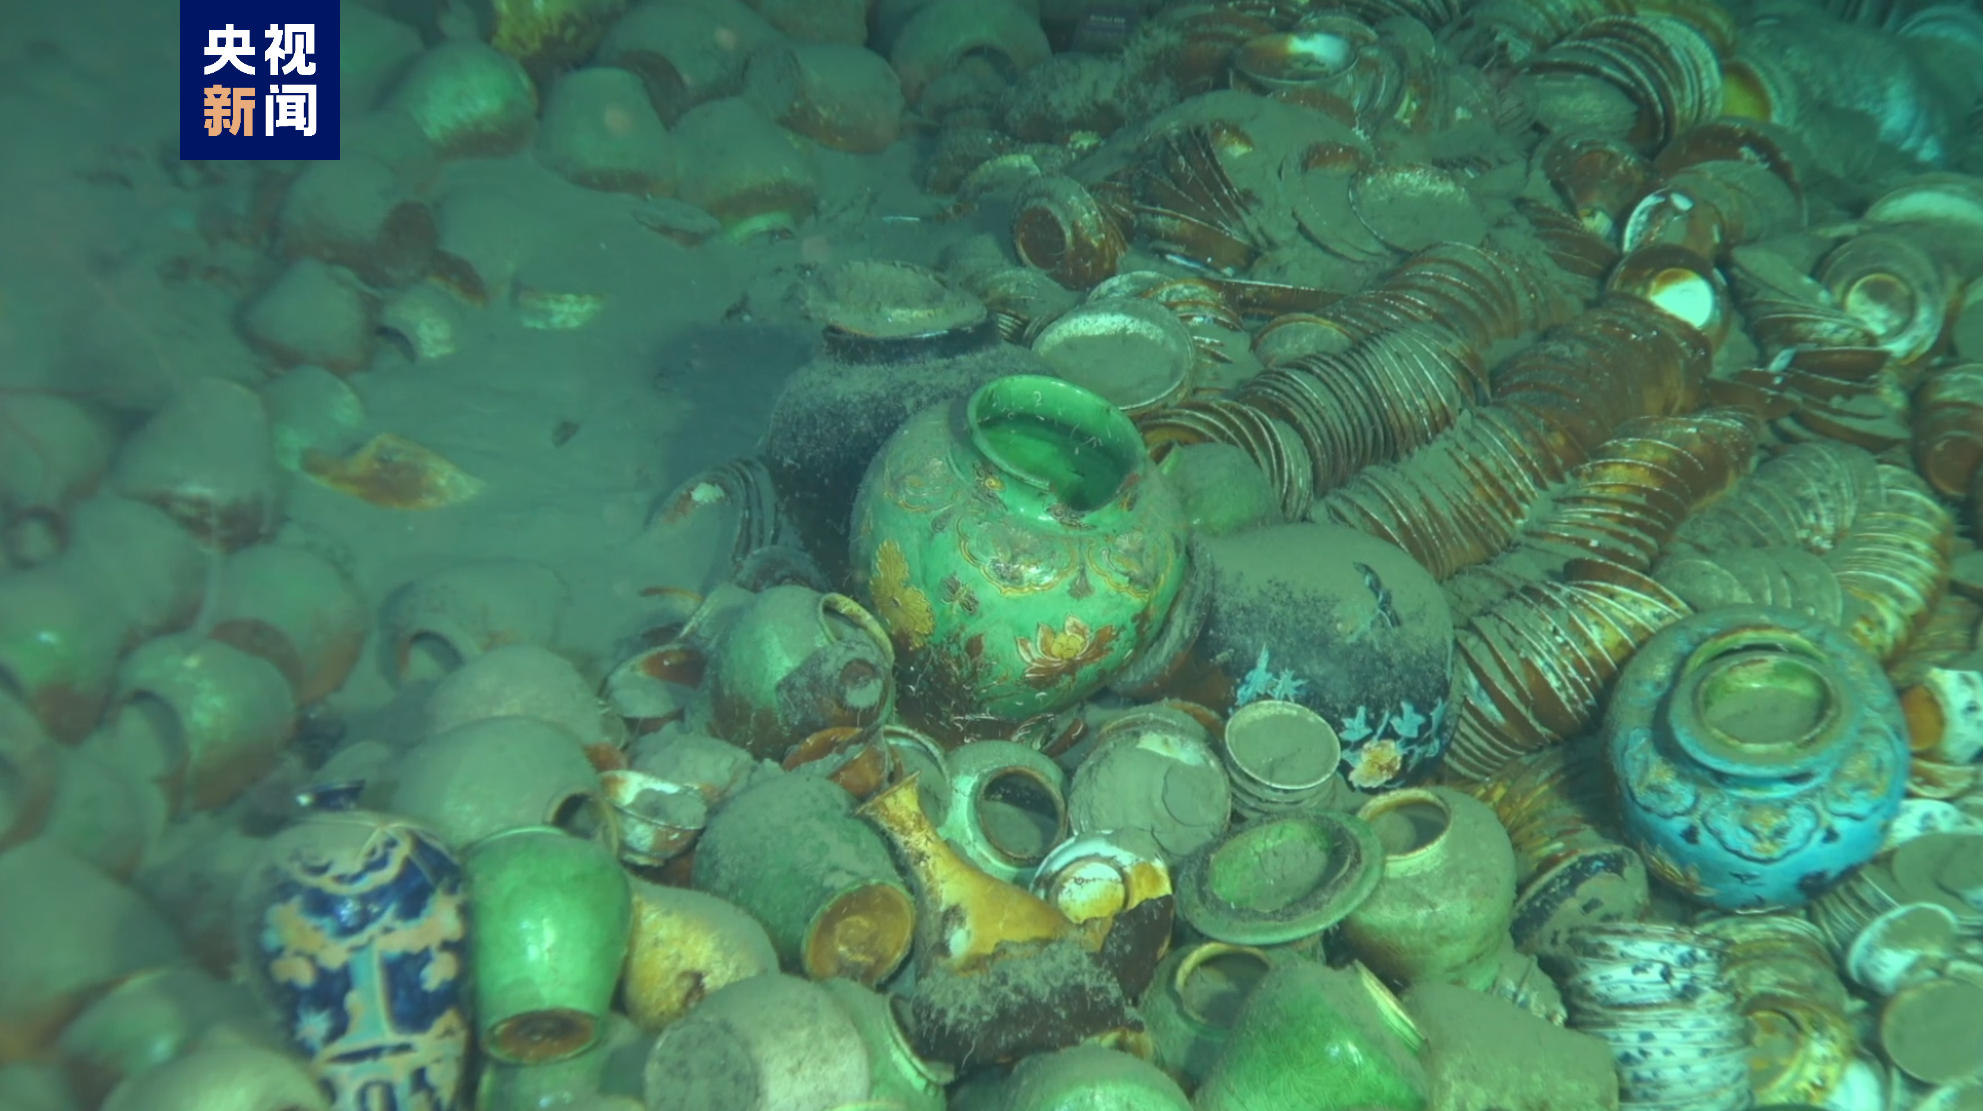 4K影像记录丨水下千米级深度沉船遗址布放永久测绘基点 载人潜水器深入拍摄